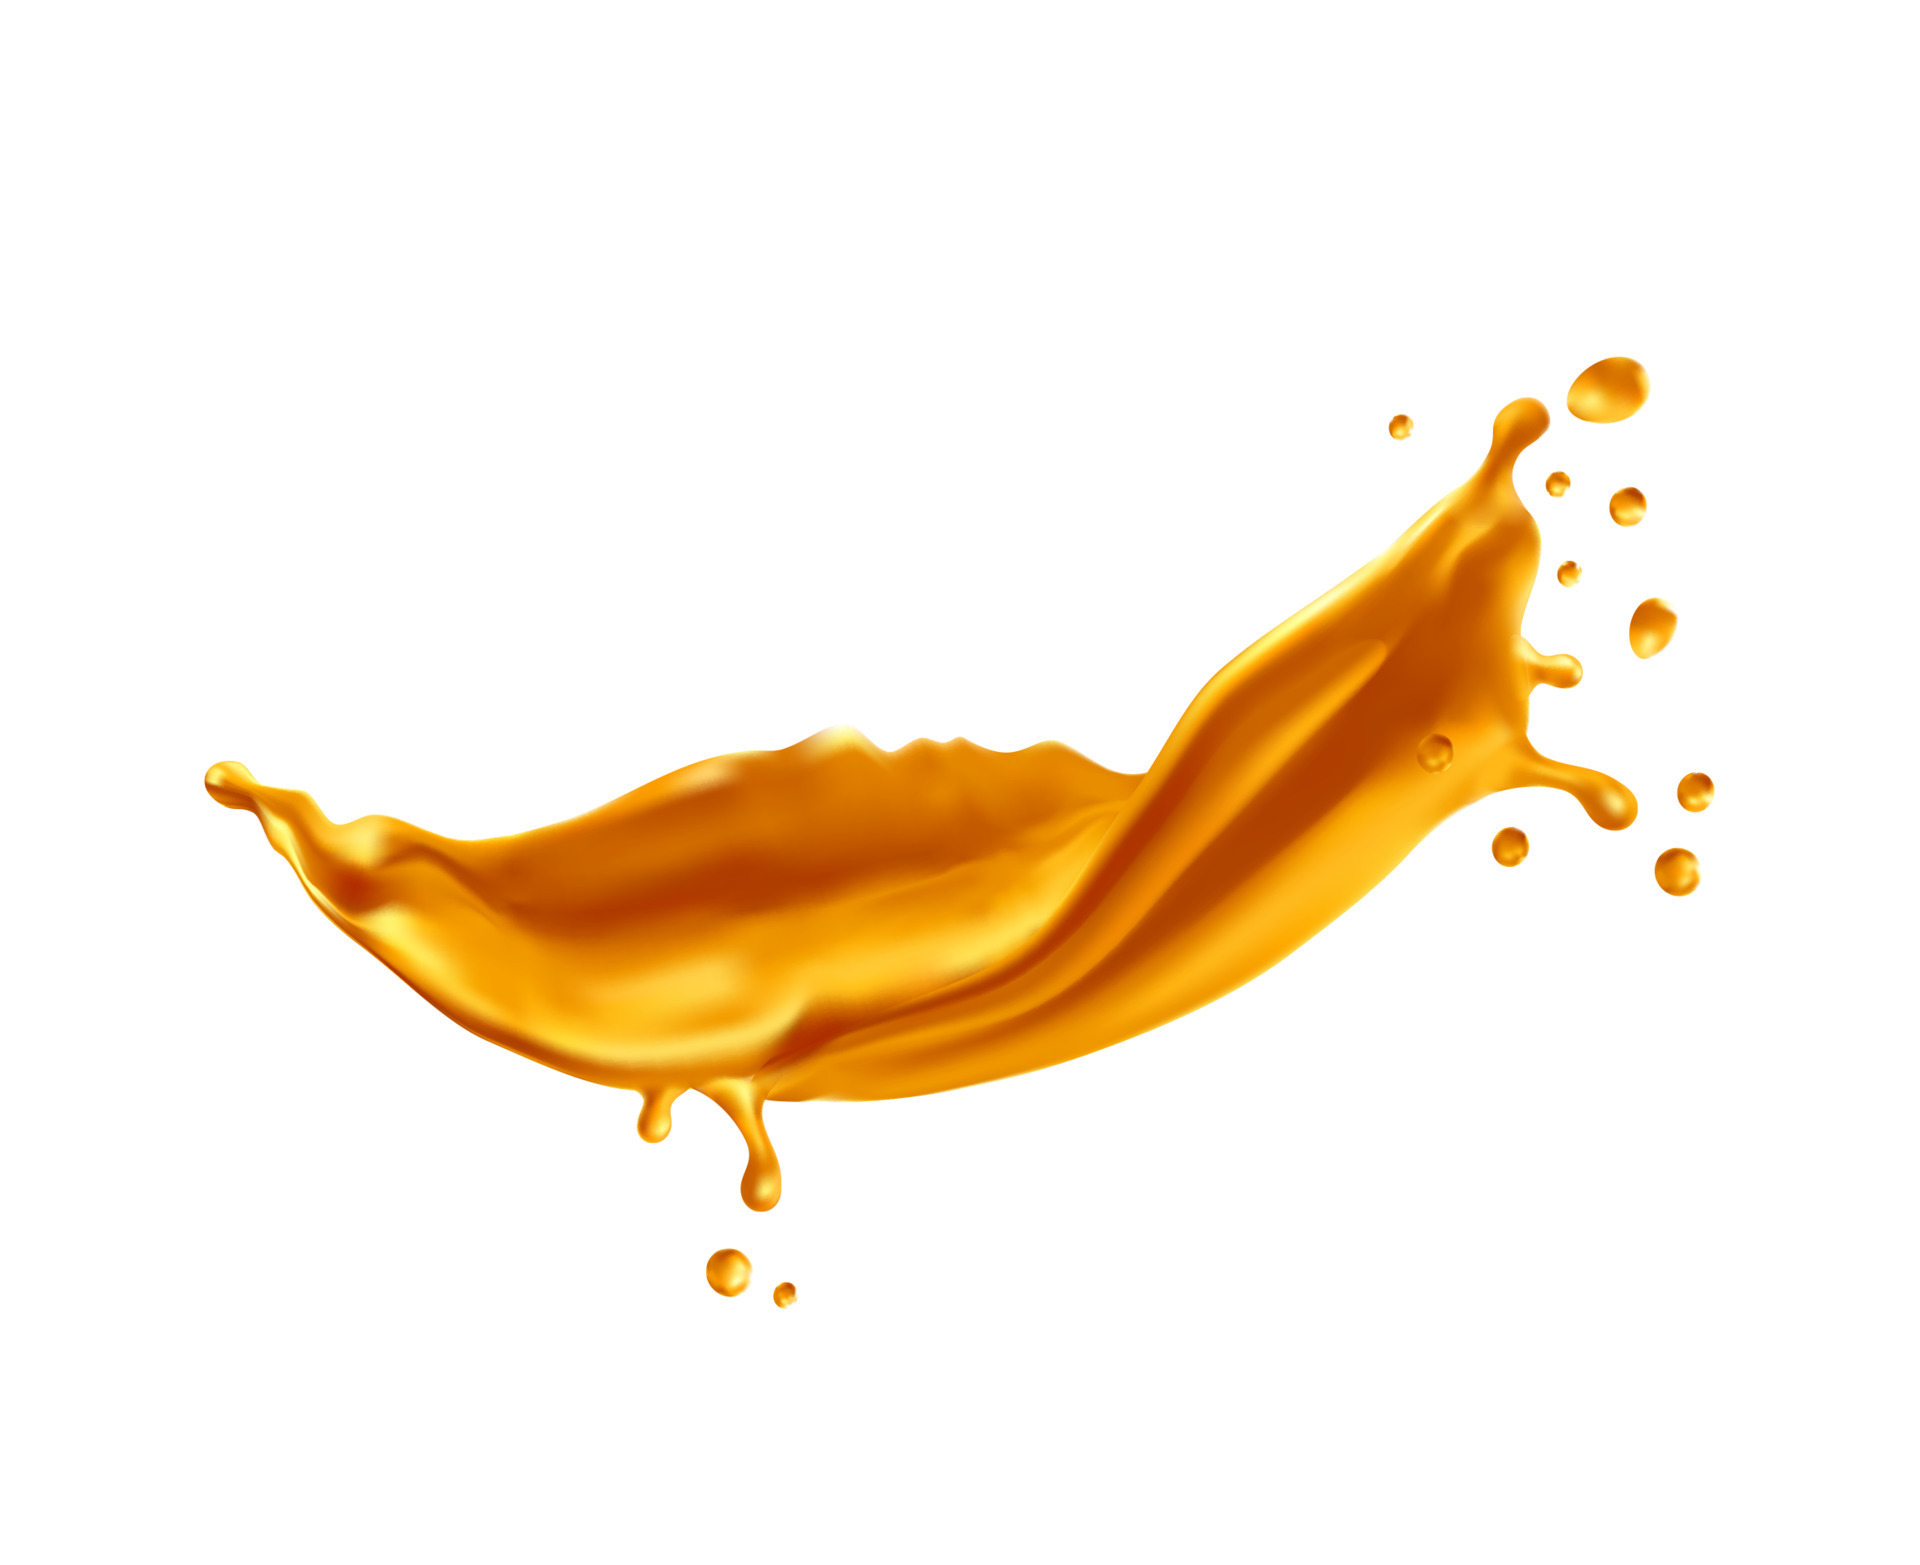 Golden wave splash, syrup caramel flow droplets 16143090 Vector Art at ...